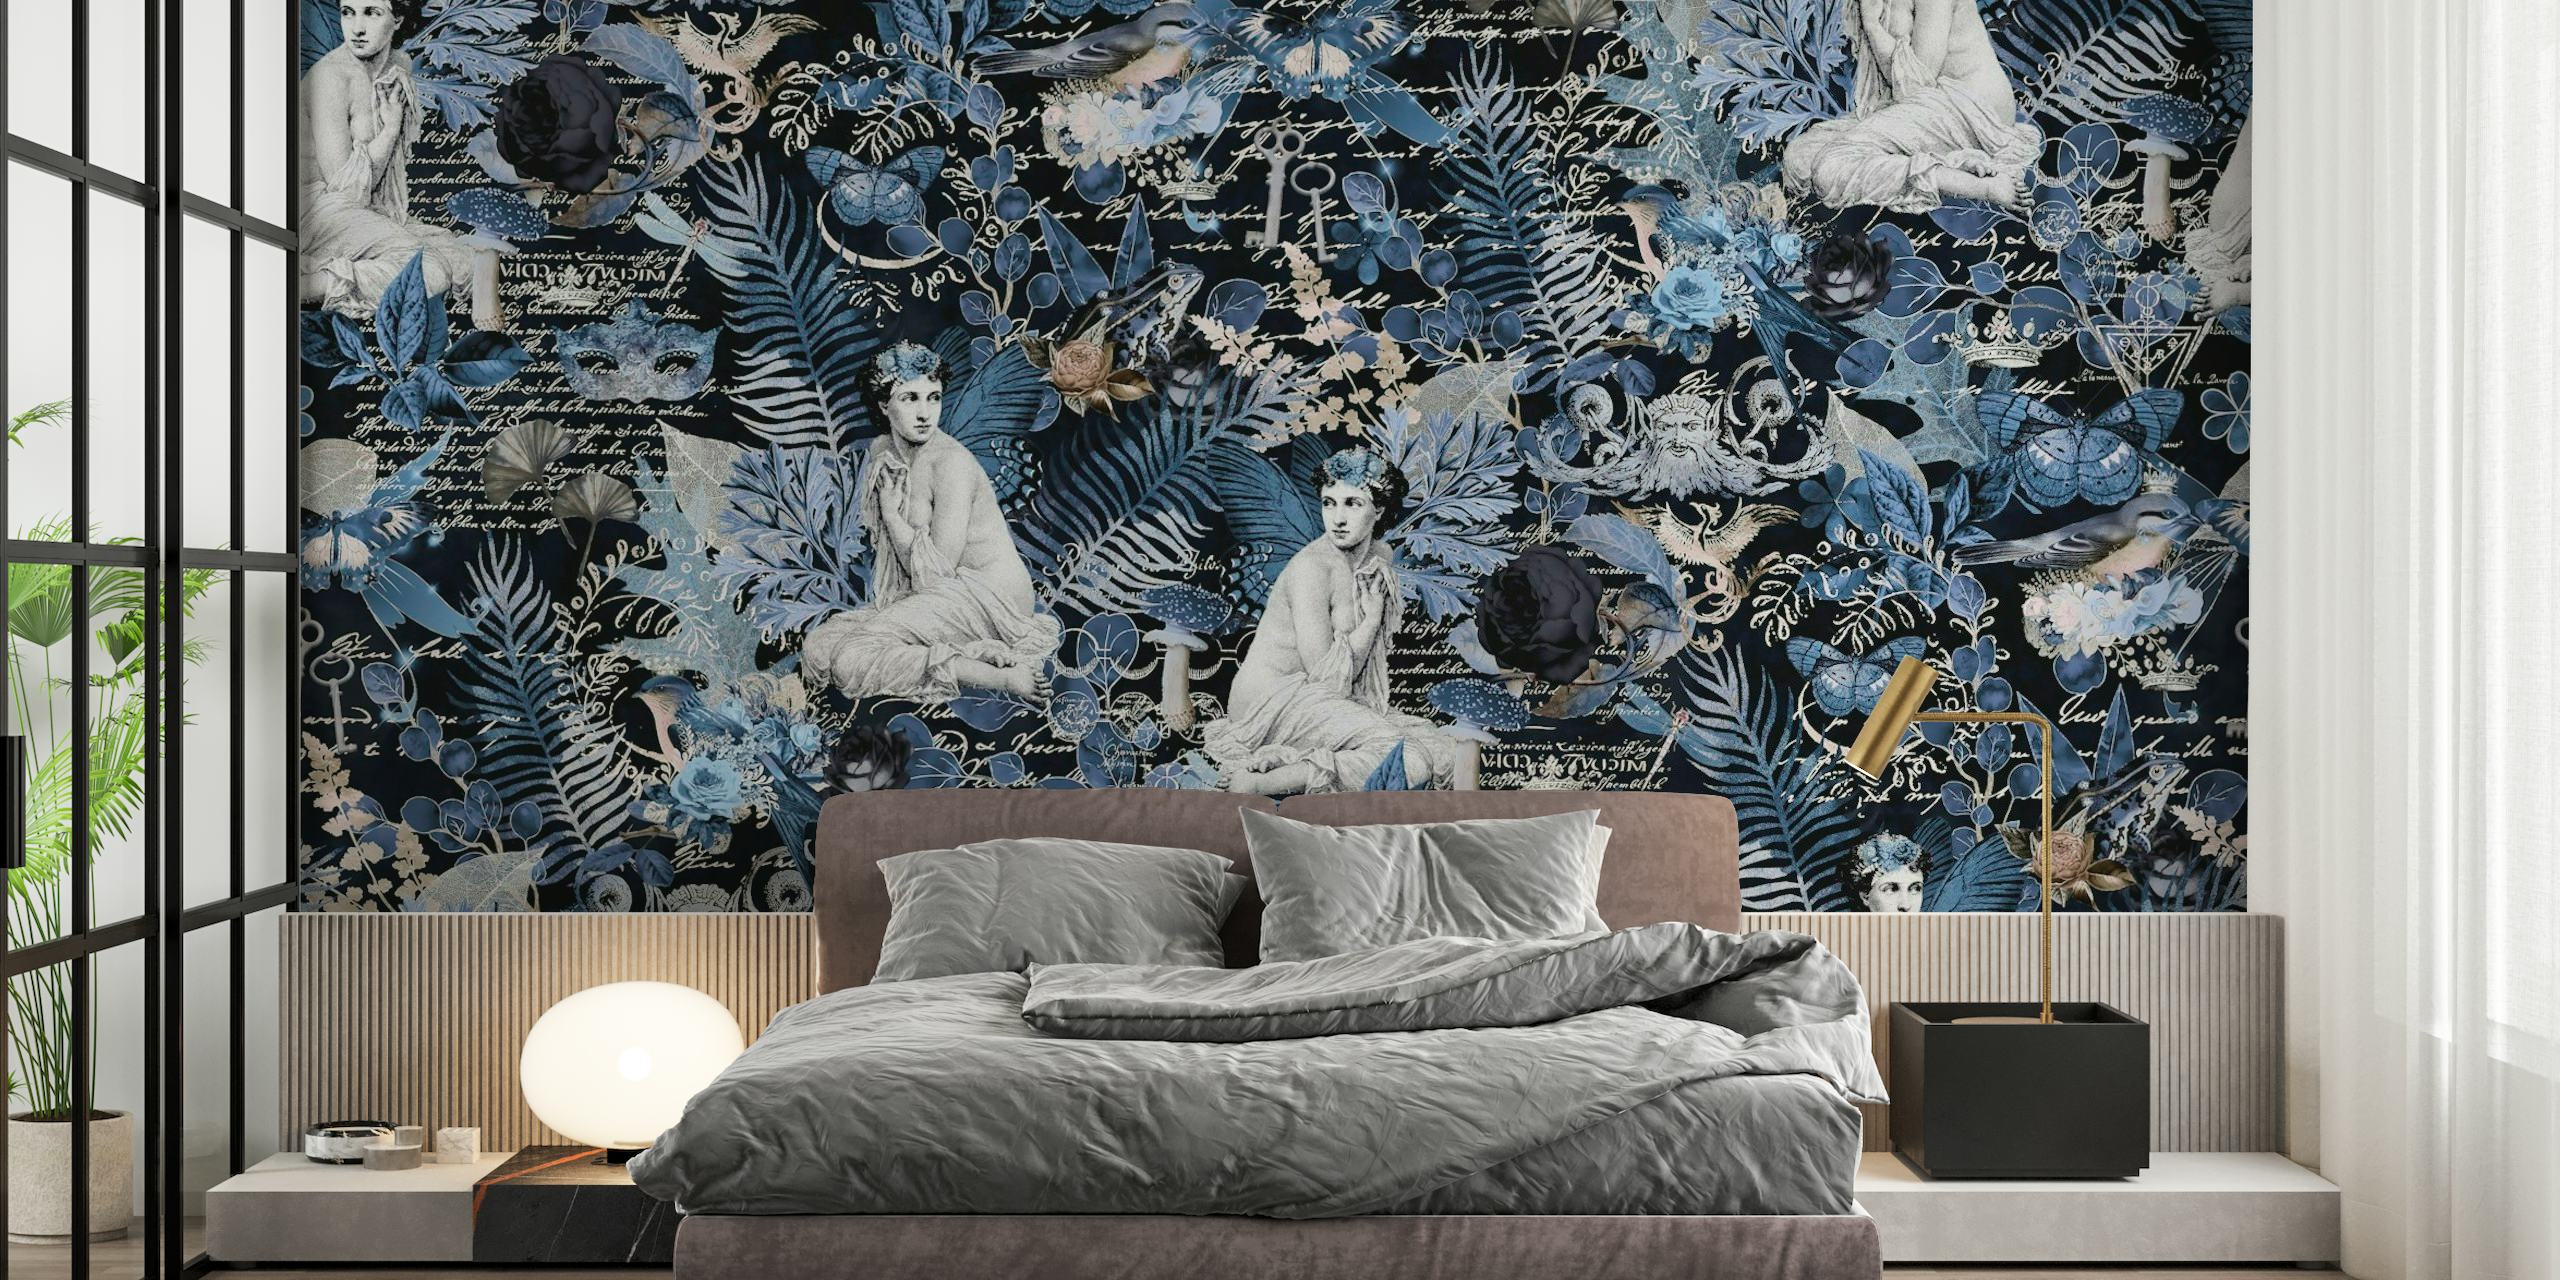 Mural de parede Mystic Mythology Forest Blue com paisagens florestais enigmáticas com figuras mitológicas em tons de azul.